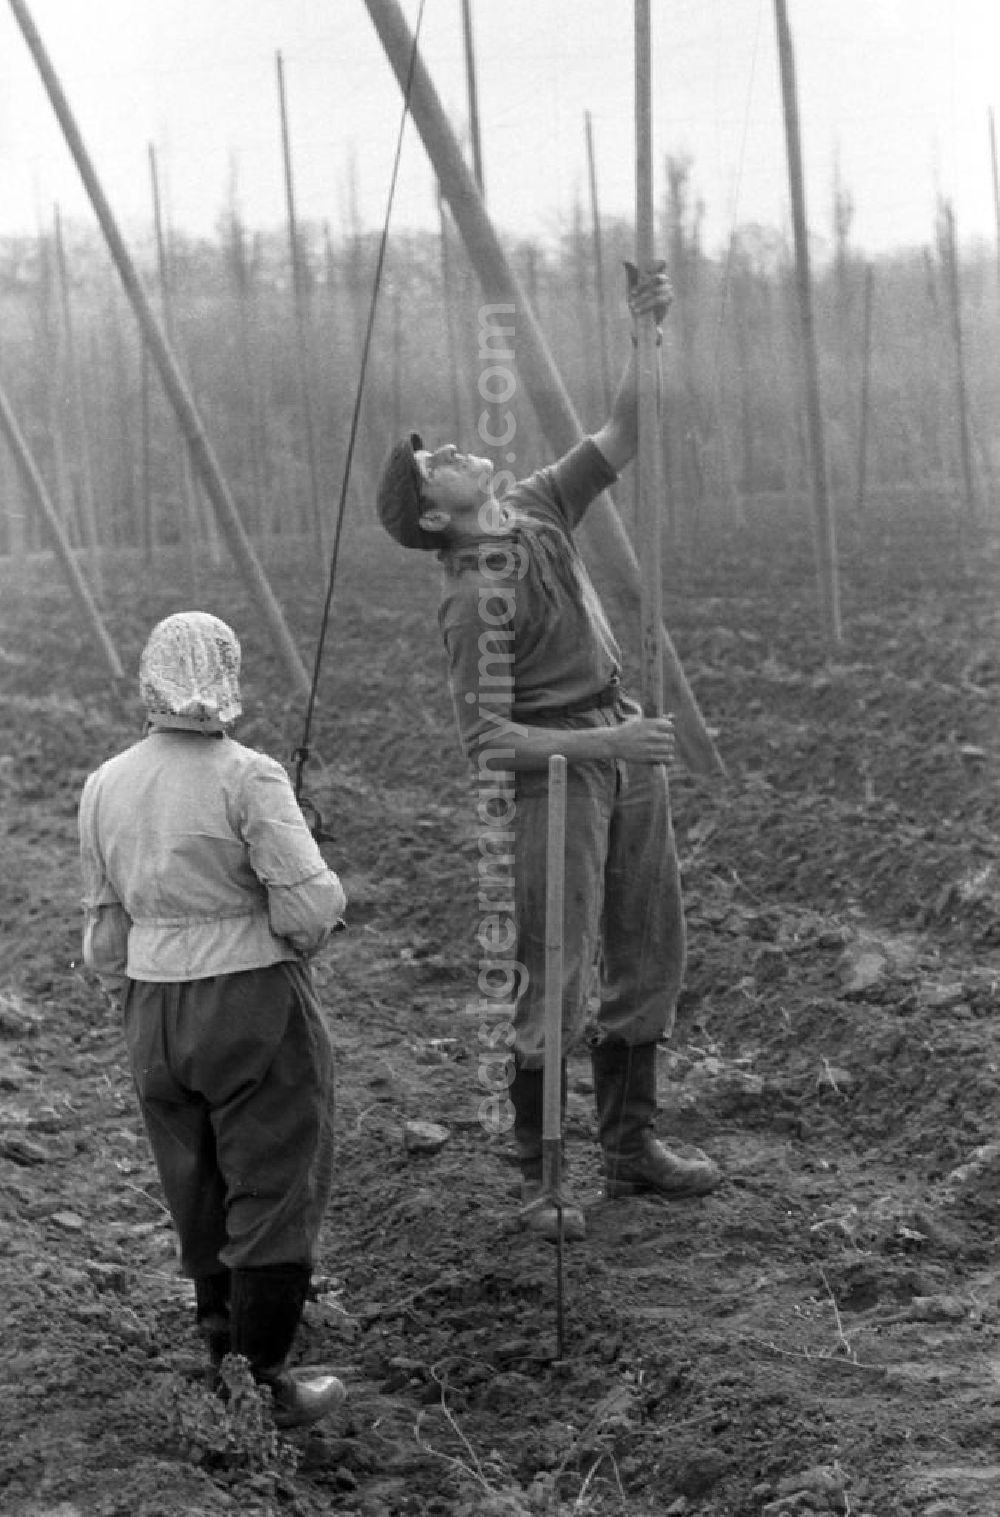 GDR photo archive: Leipzig - Ein Arbeiter und eine Arbeiterin errichten Drahtgestelle für den Anbau von Hopfen auf einem Feld in der Nähe von Leipzig.